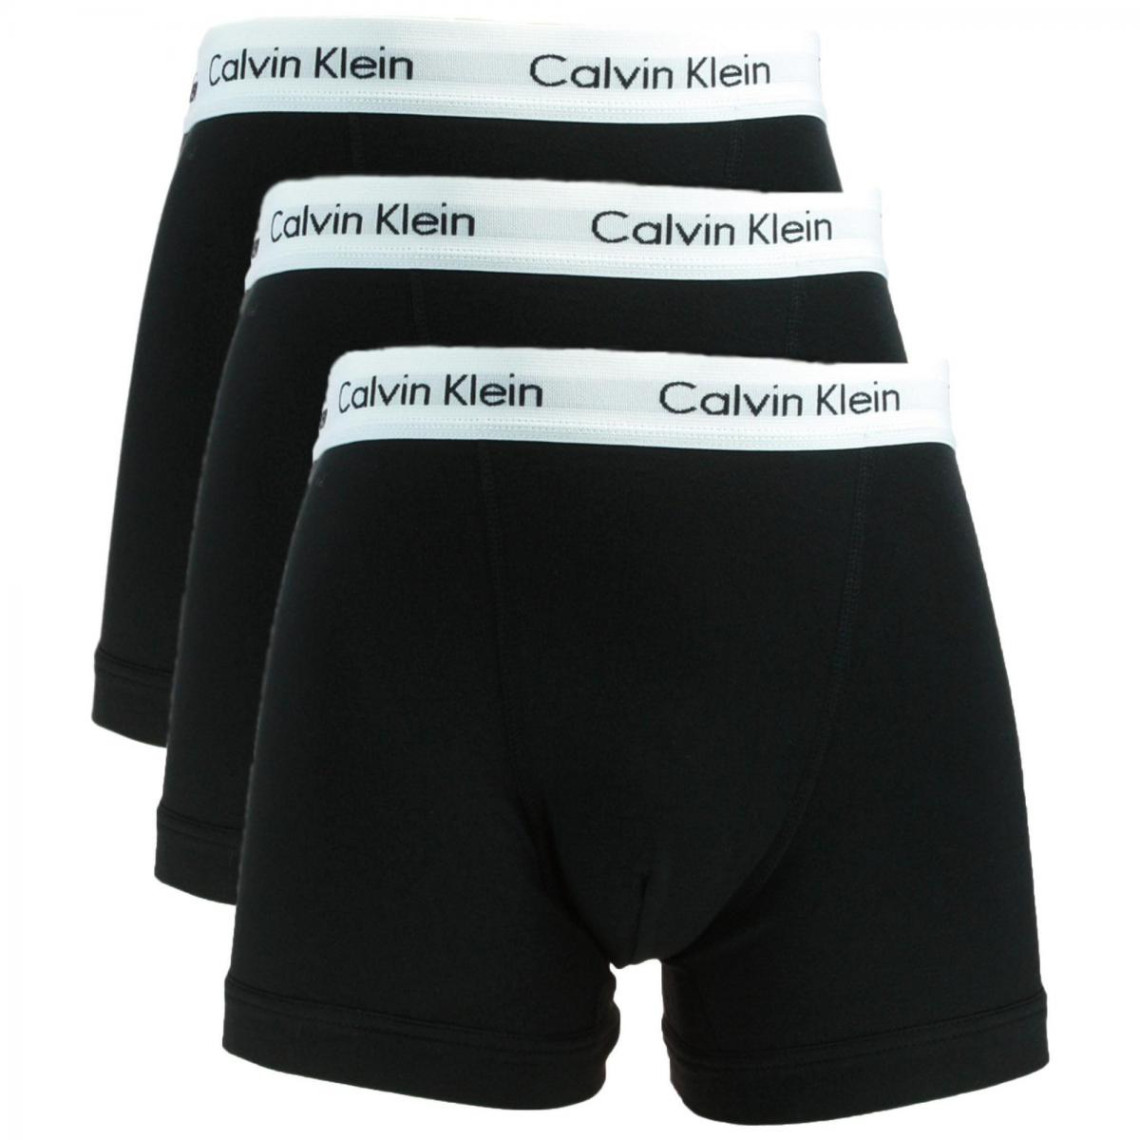 BOXER HOMME CALVIN KLEIN Calvin Klein Underwear - Boxer & Shorty Homme sur  MenCorner